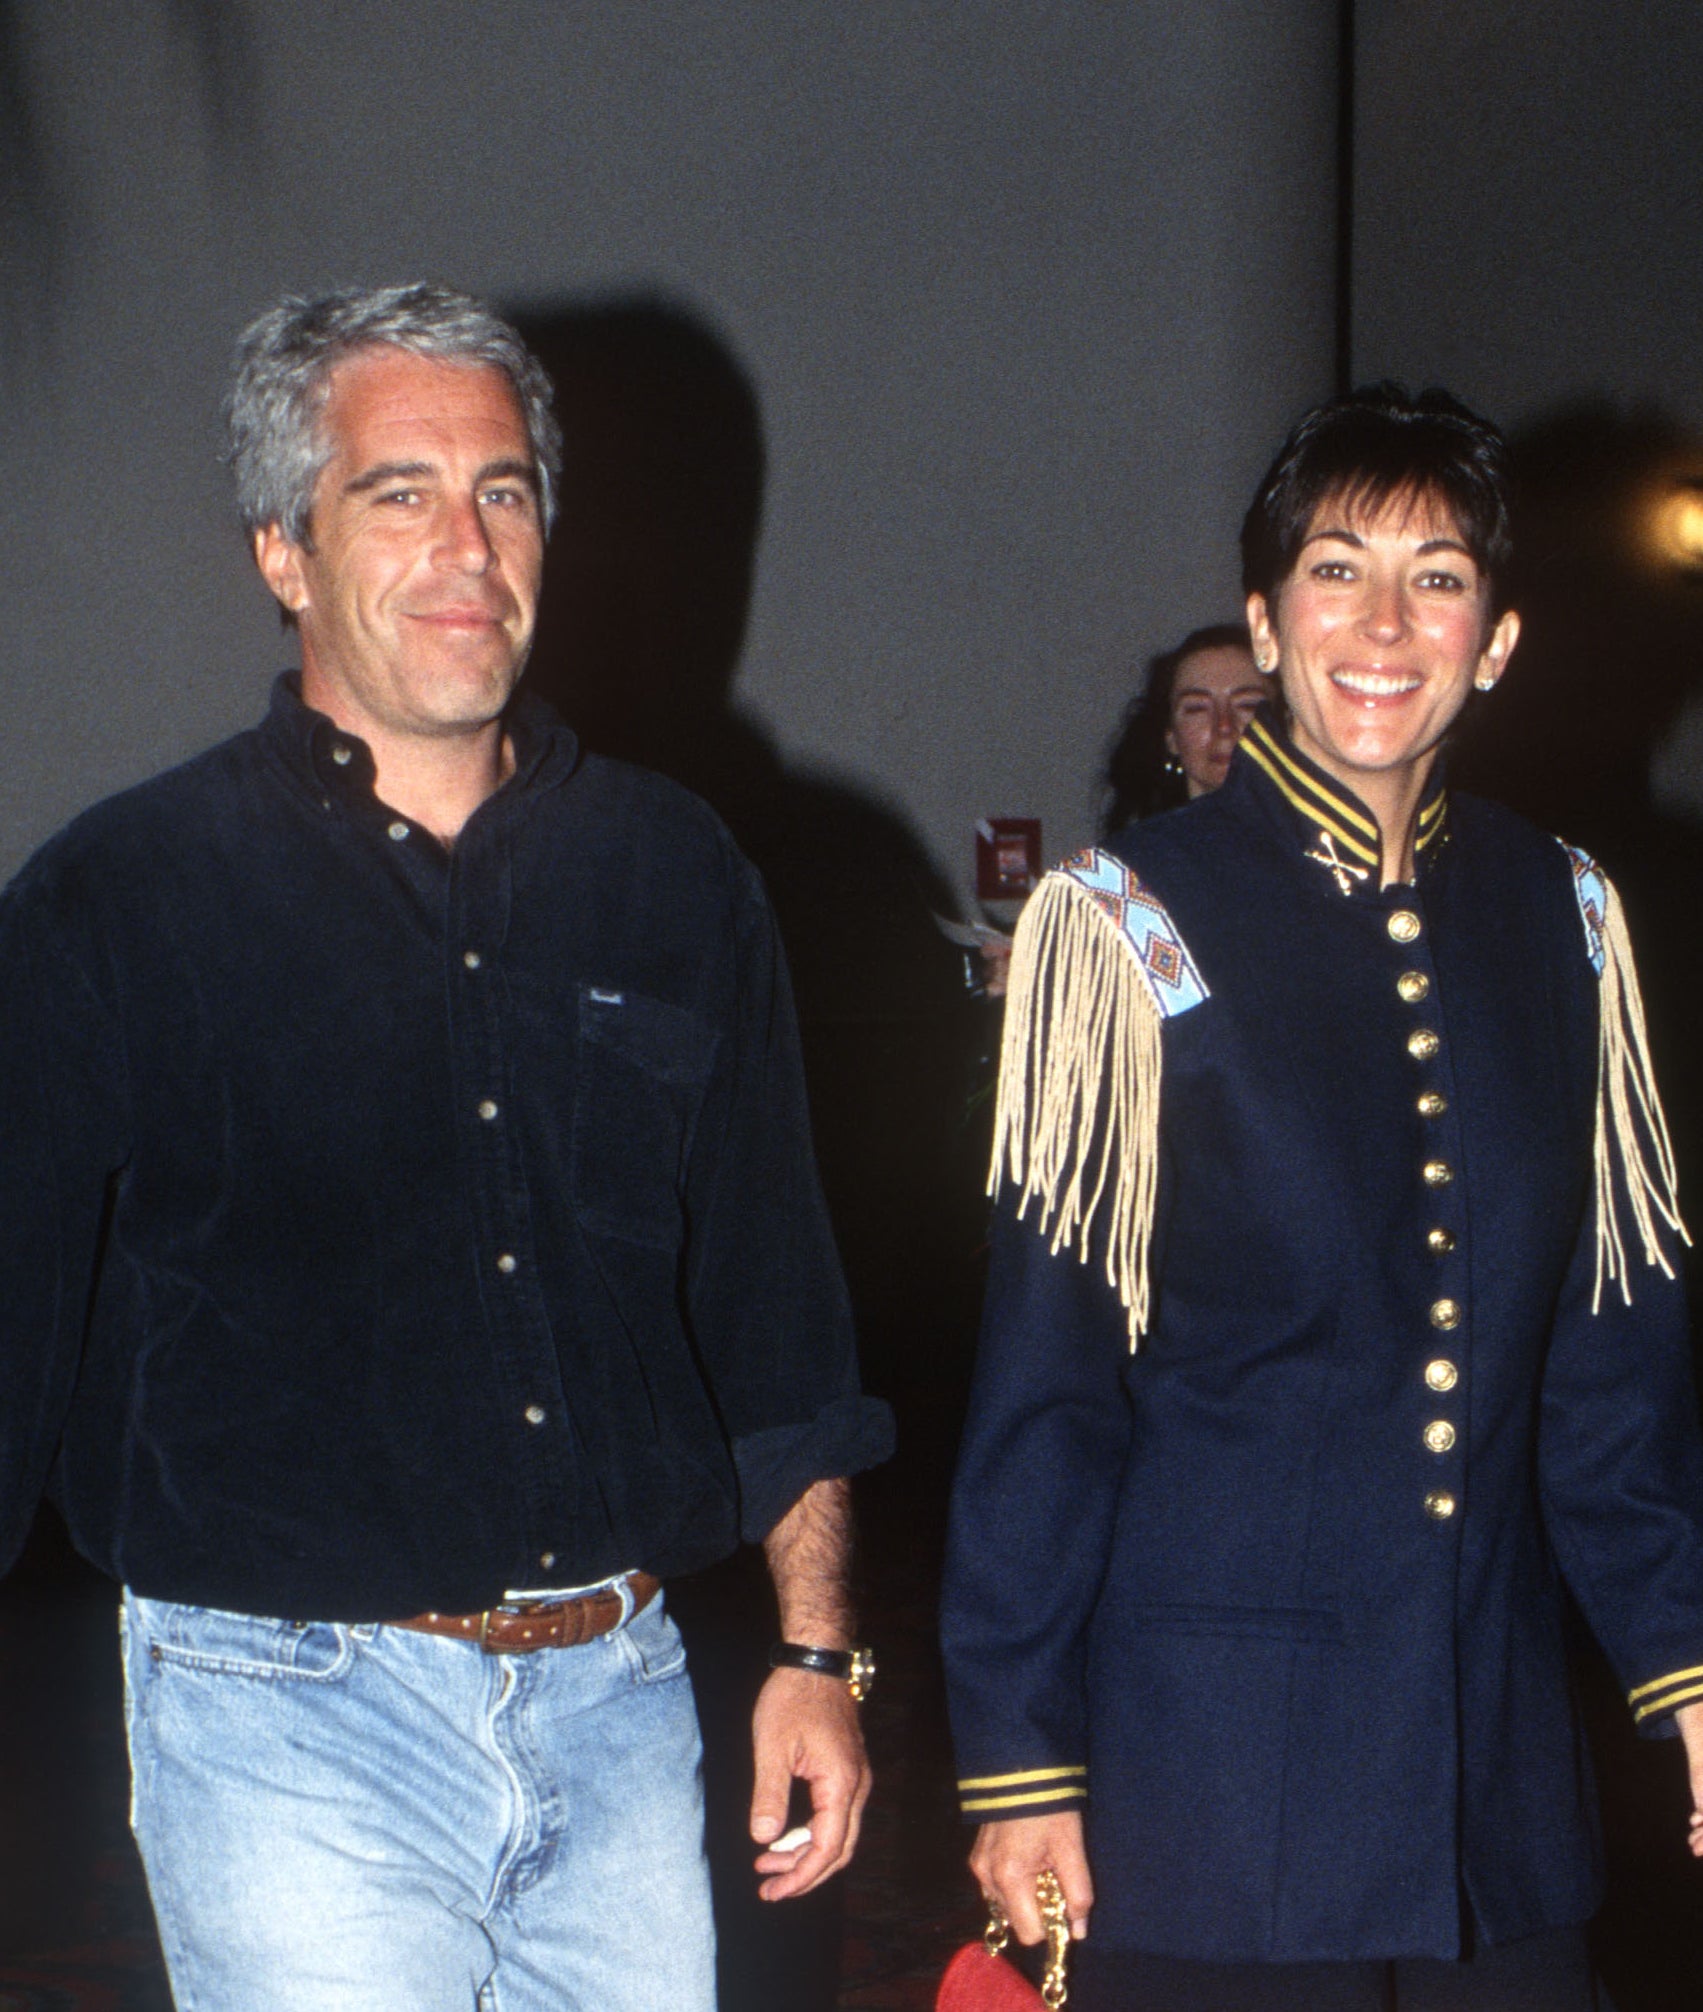 Ghislaine Maxwell smiles as she walks next to Epstein